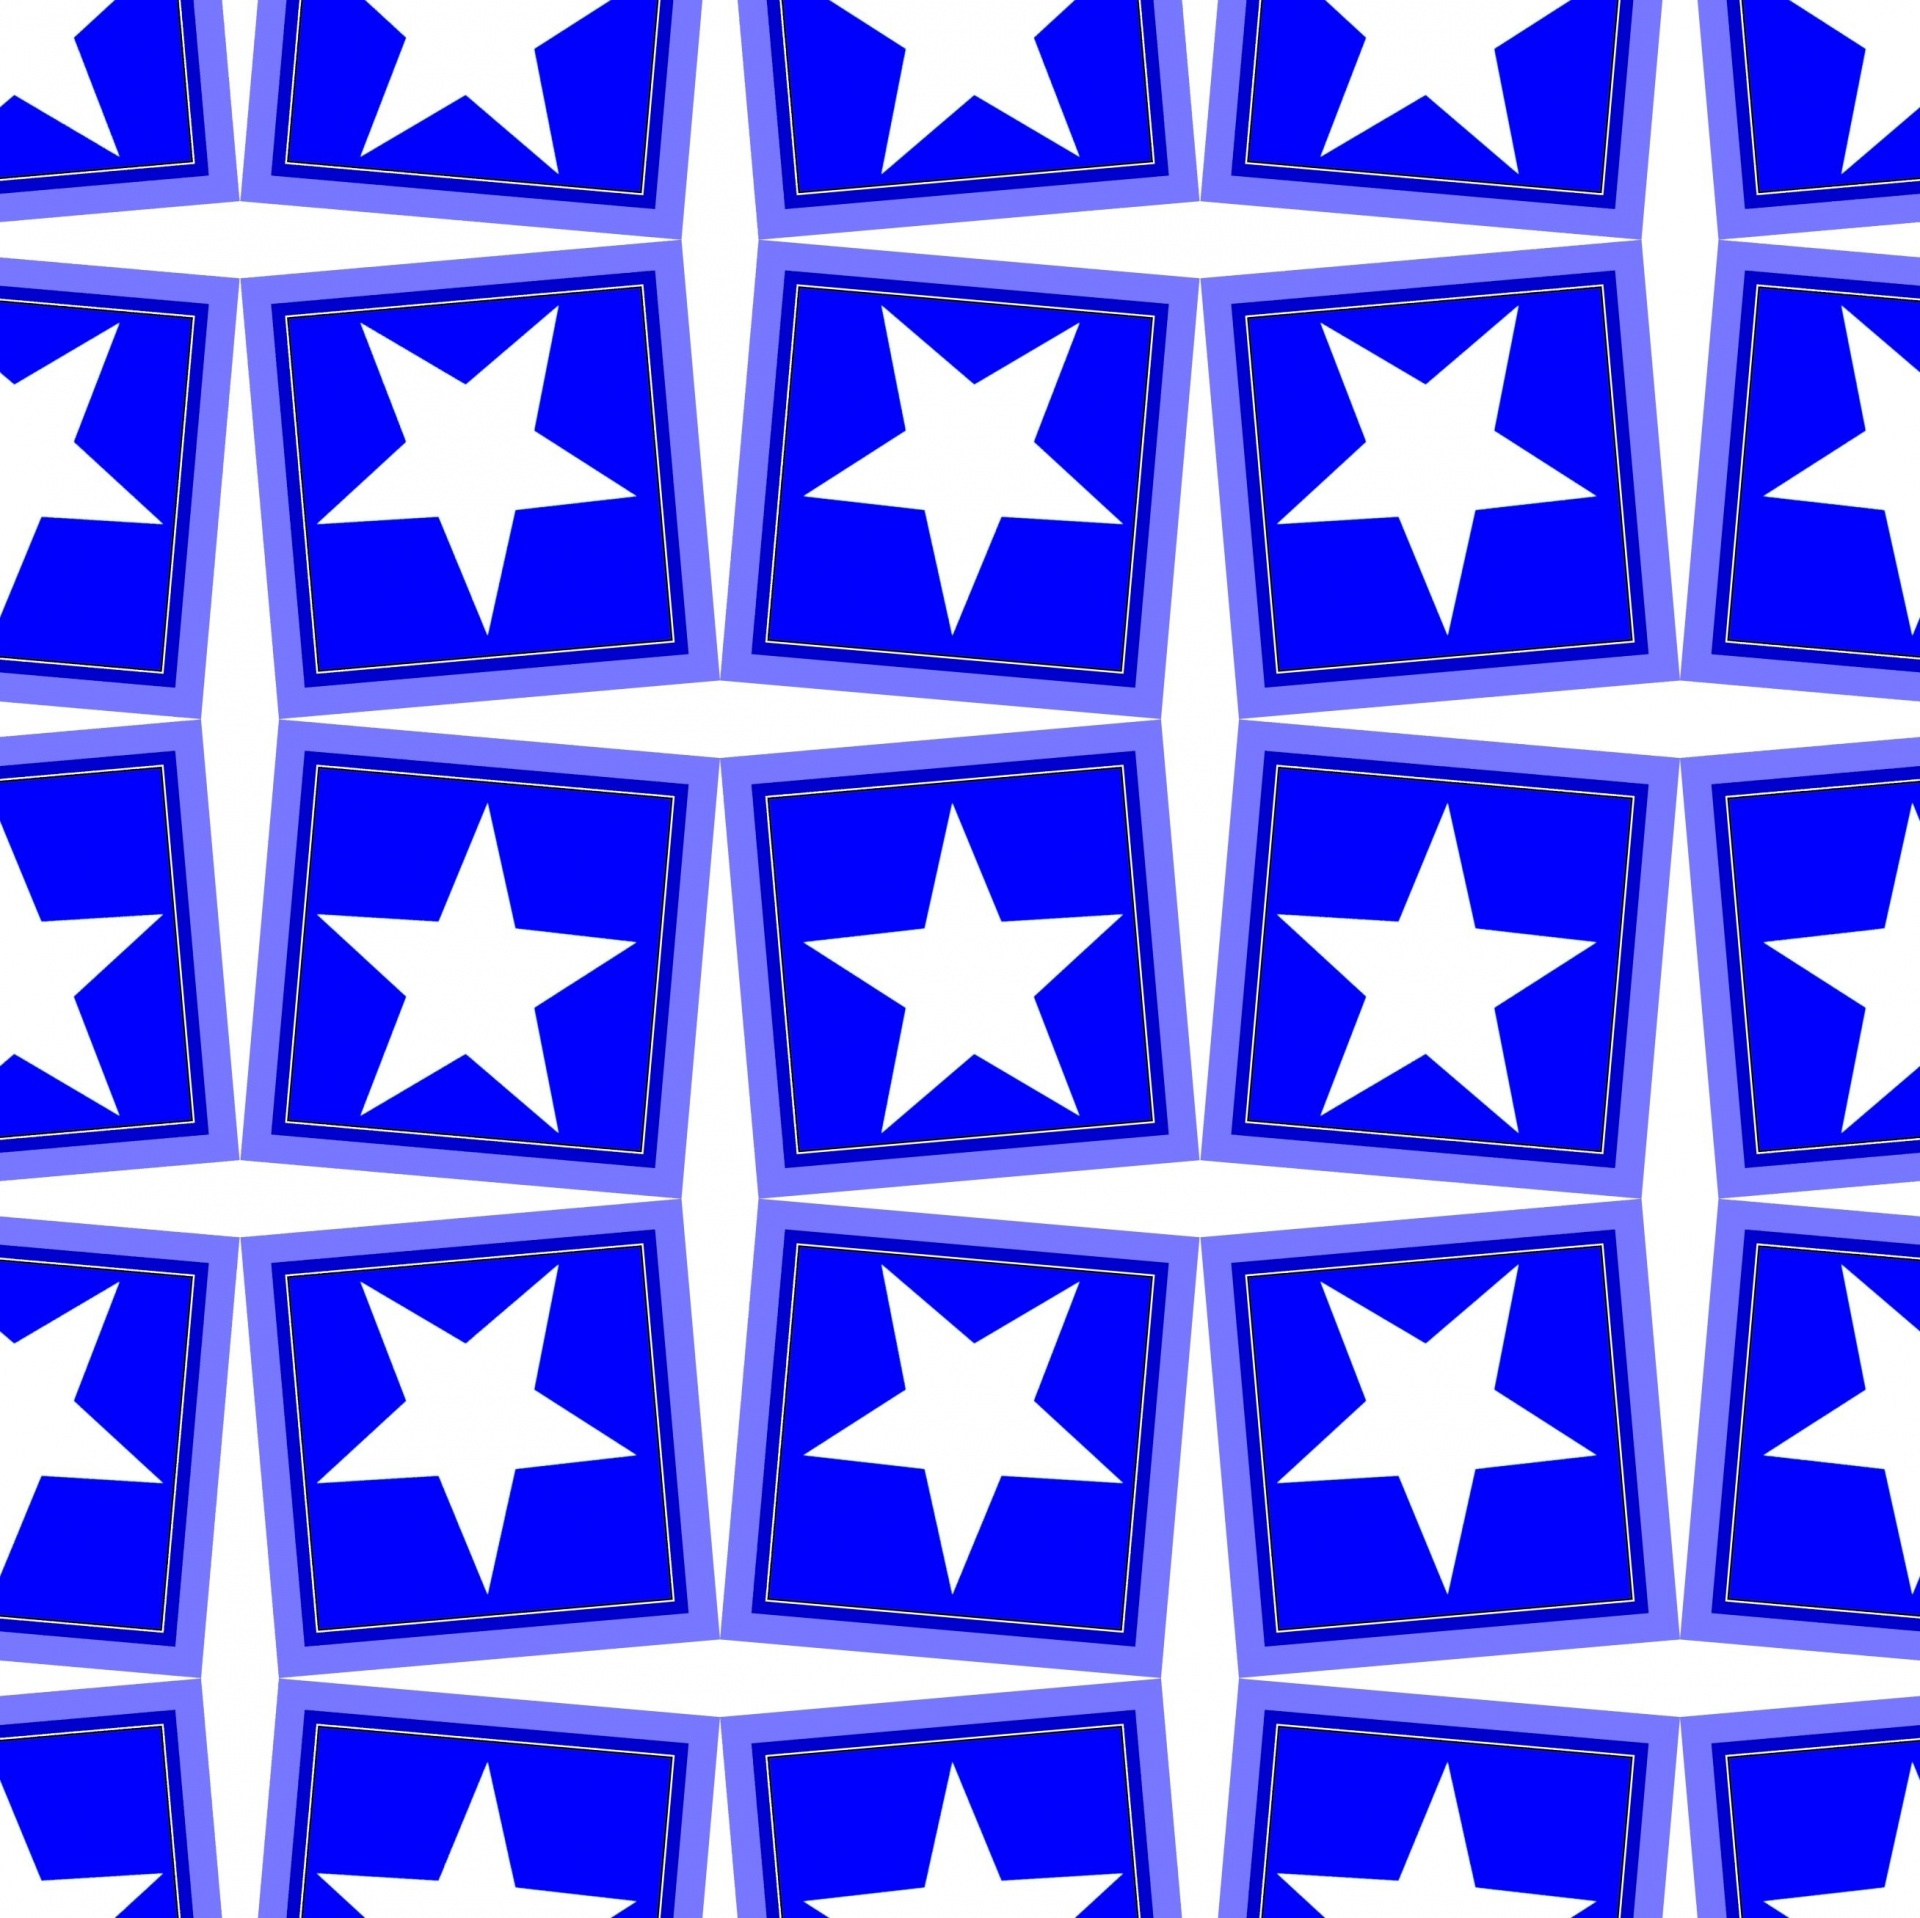 Patroon met vijfpuntige sterren